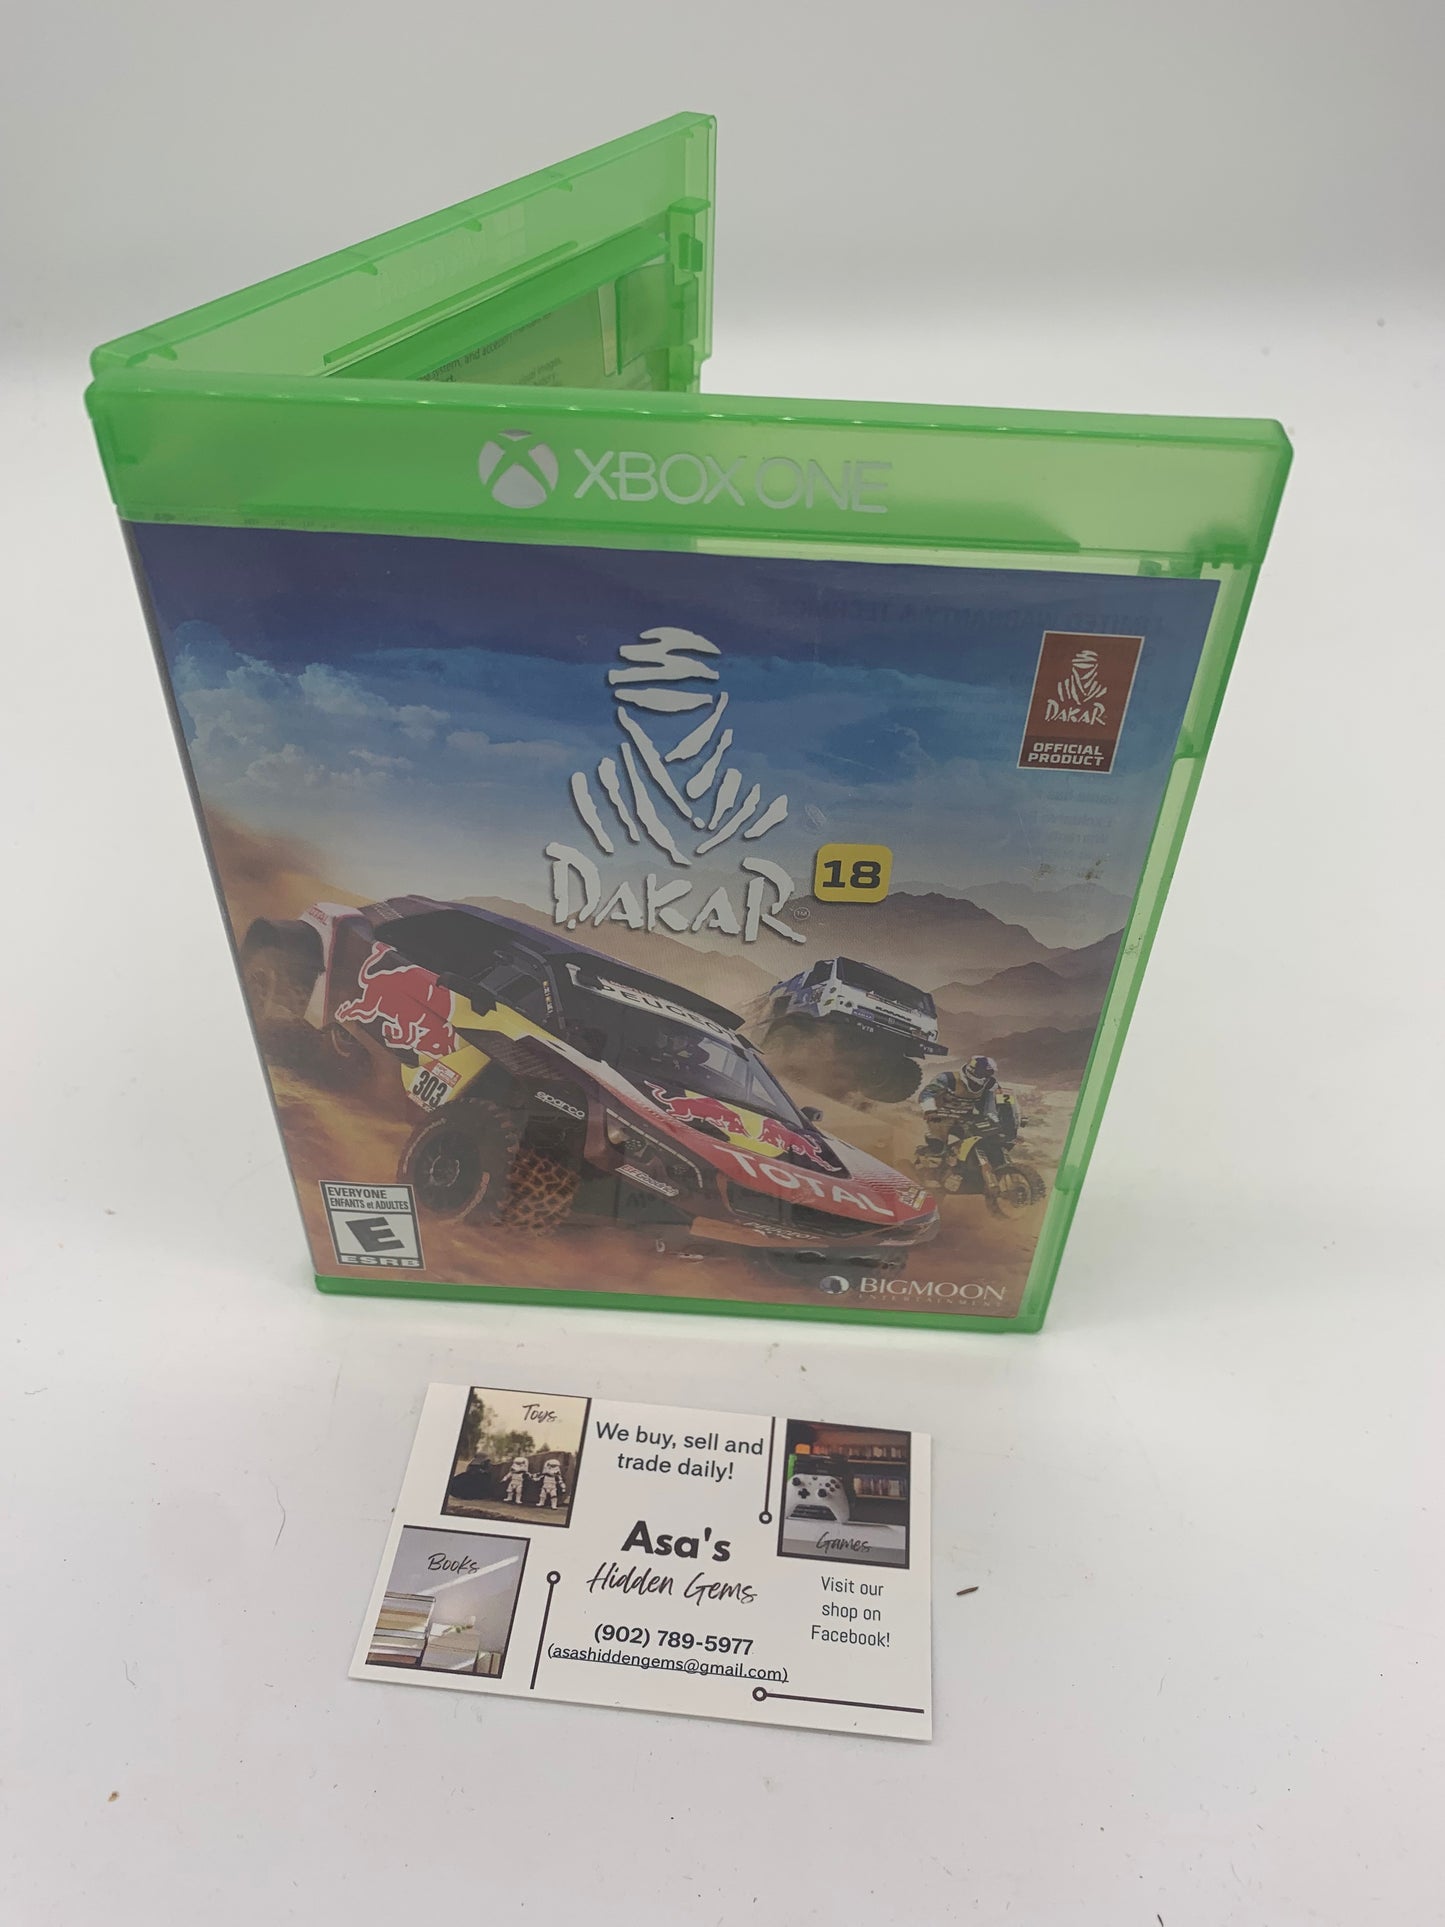 Dakar 18 - Xbox One Game